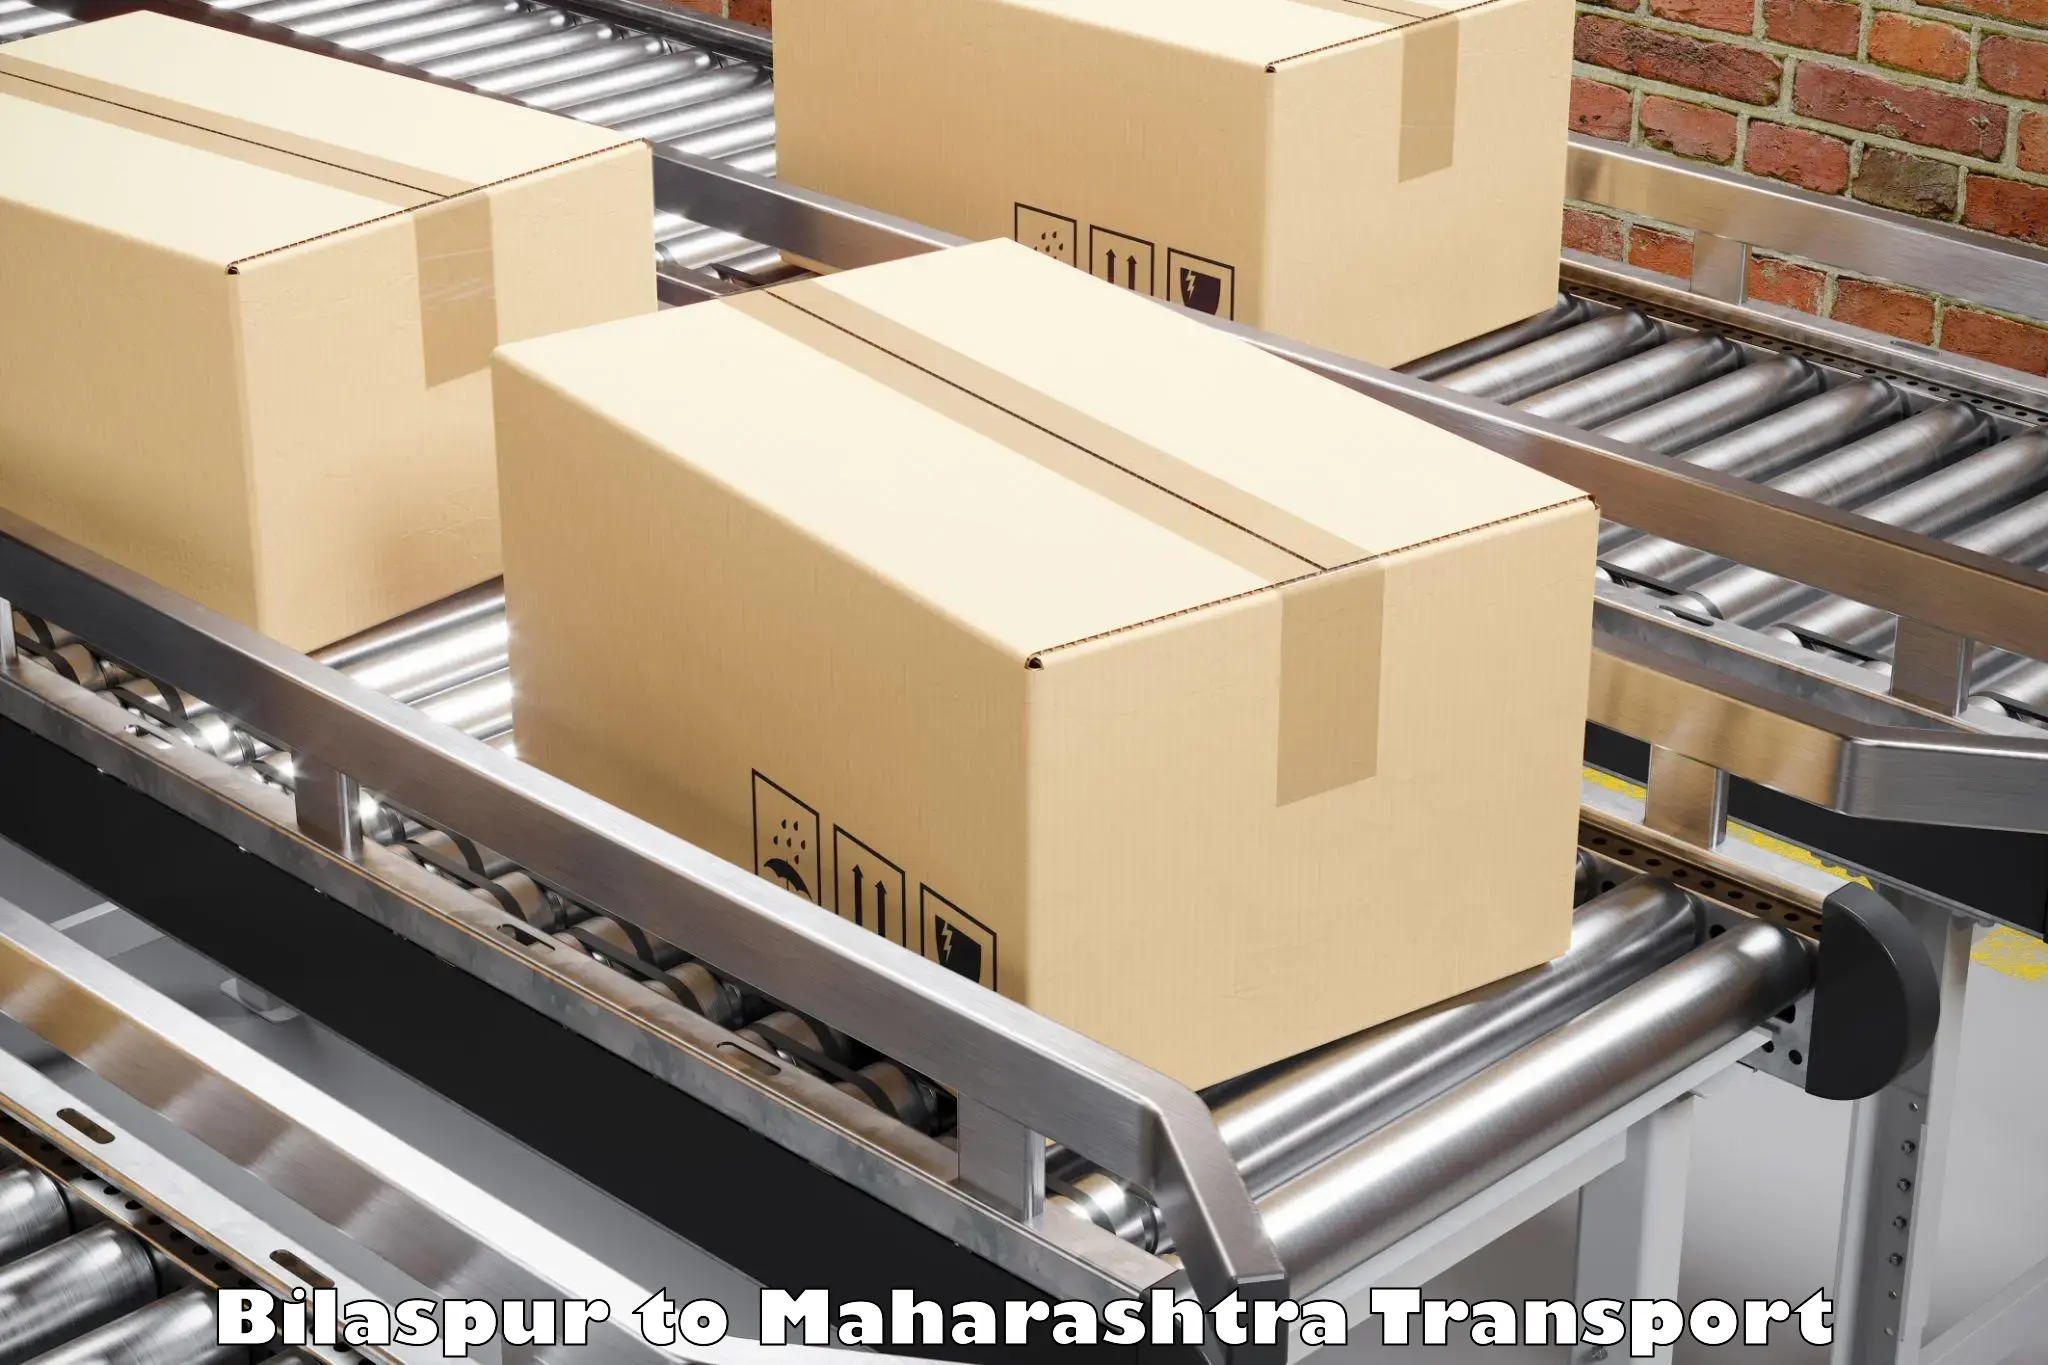 Cargo transportation services in Bilaspur to Walchandnagar